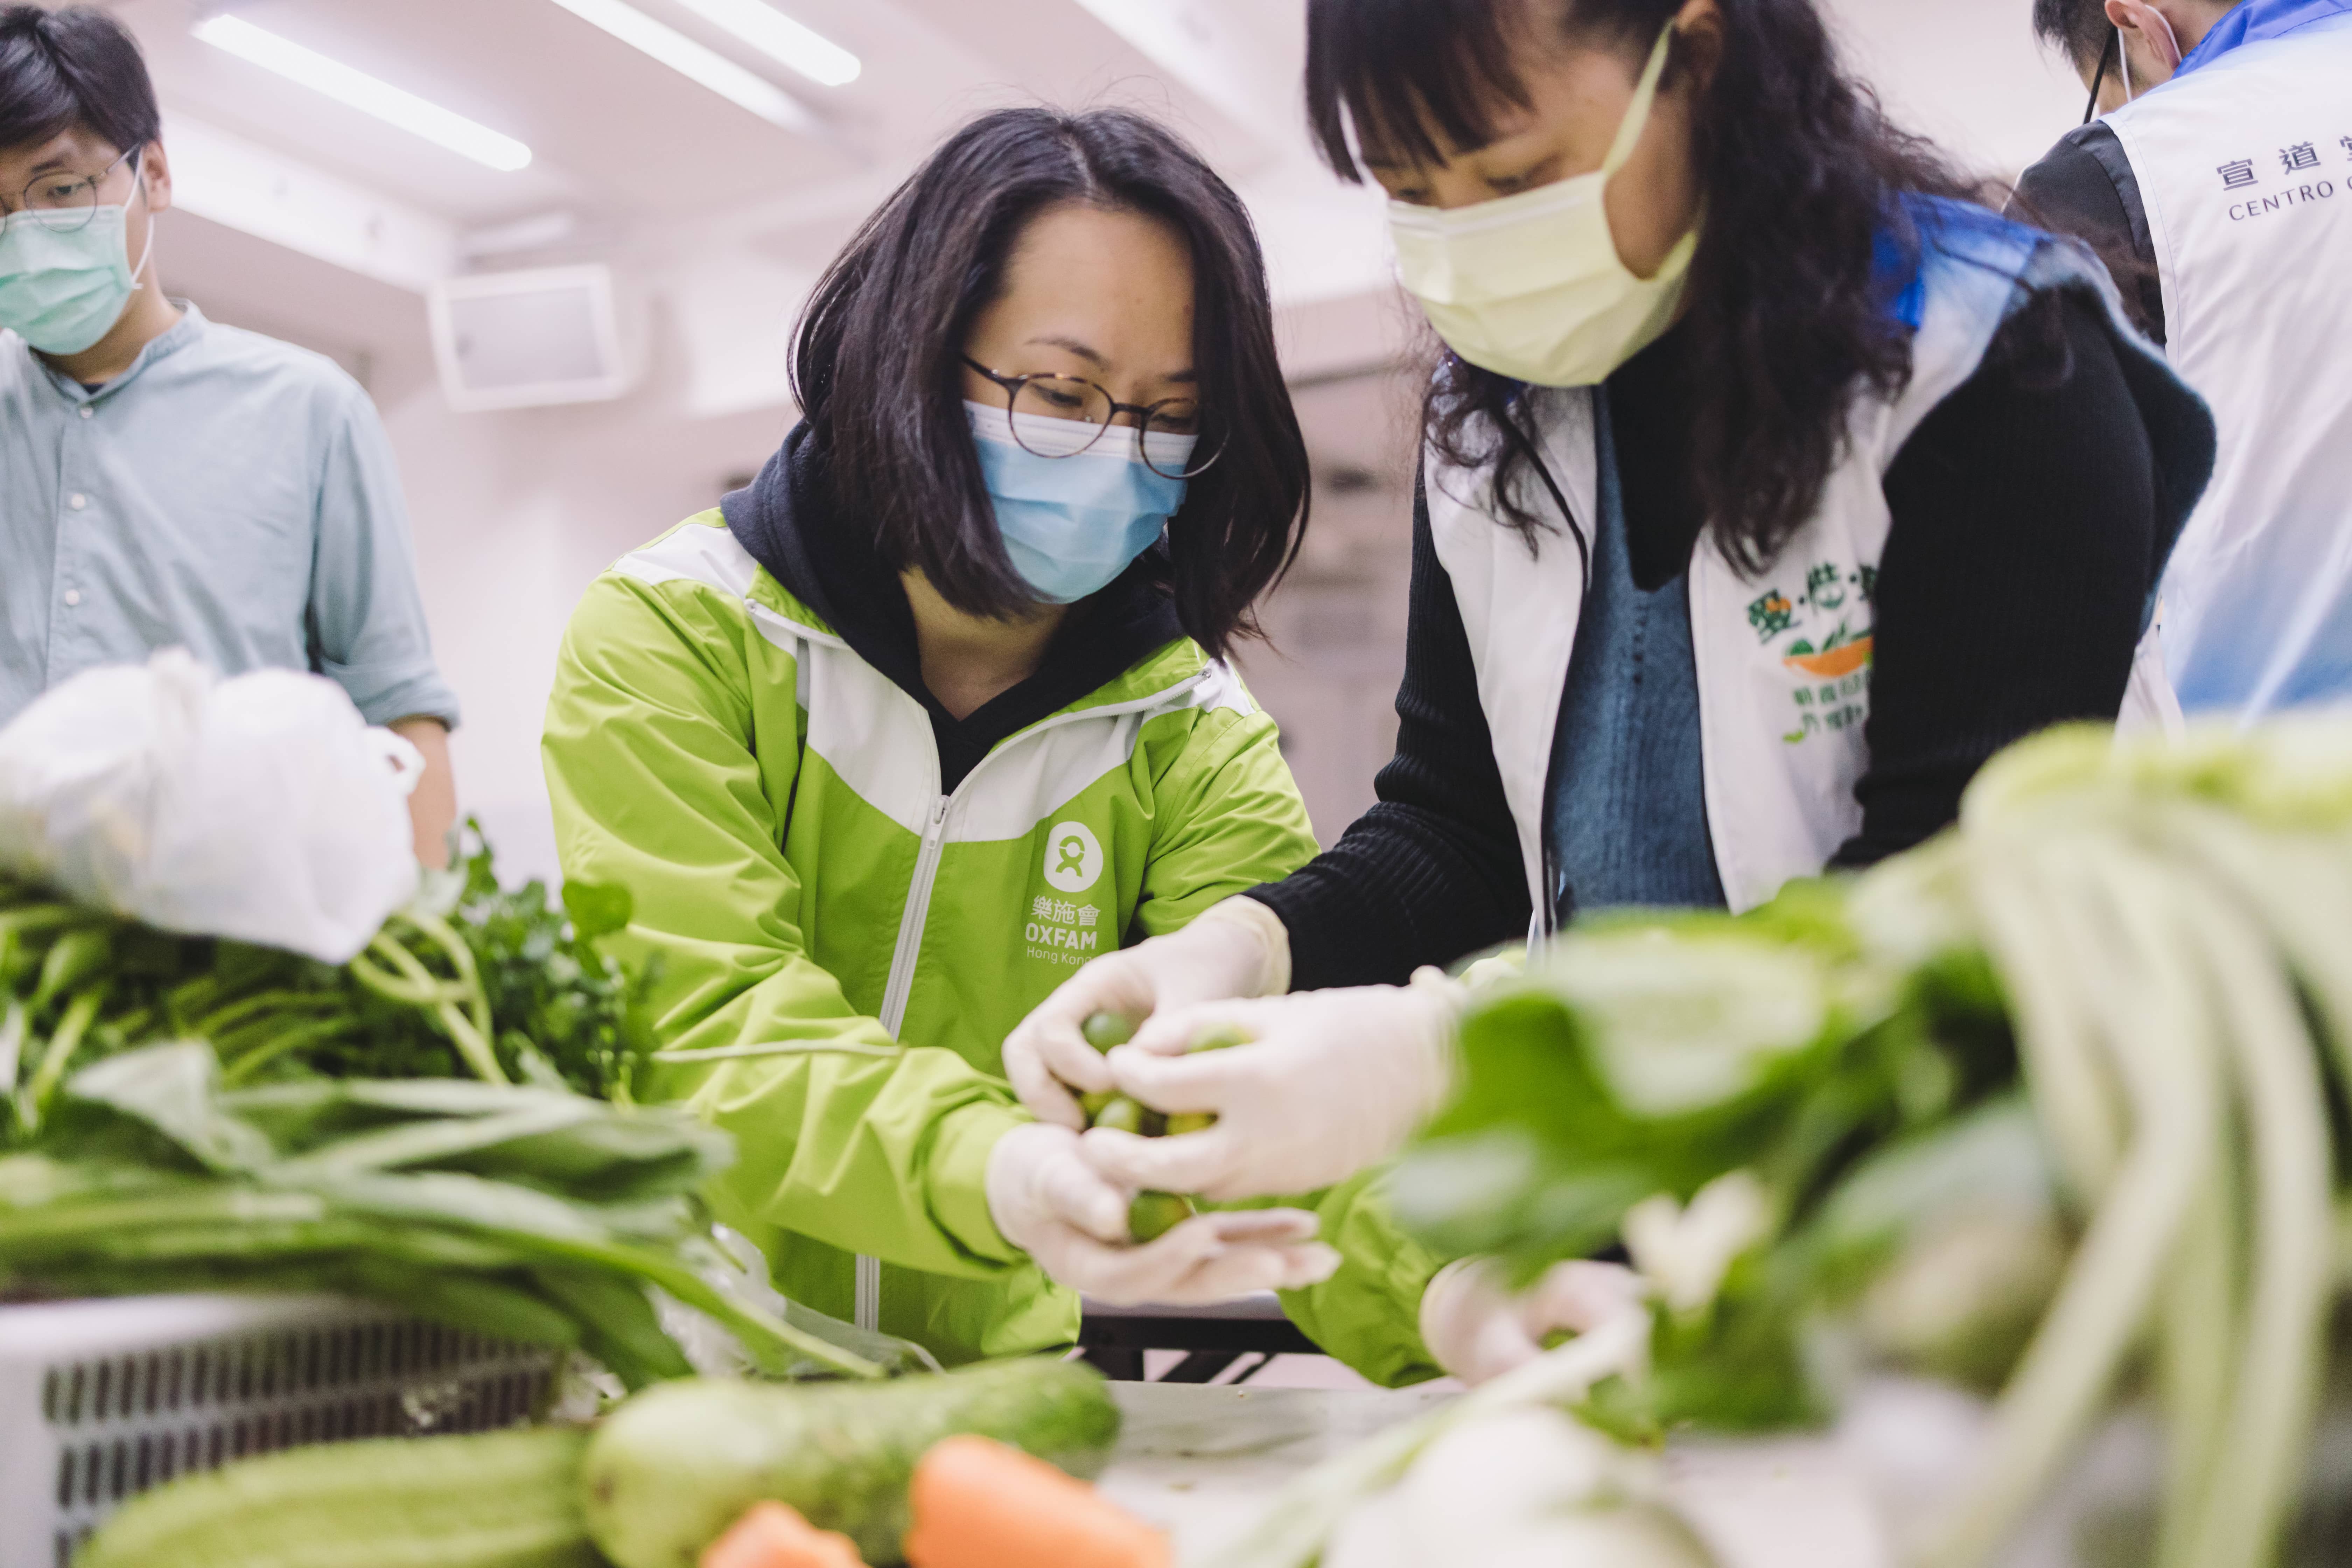 樂施會同事與合作夥伴的職員會先檢查剩菜質素，如有壞掉的部分會先除掉。（攝影︰Pui Cheng Lei / 樂施會）